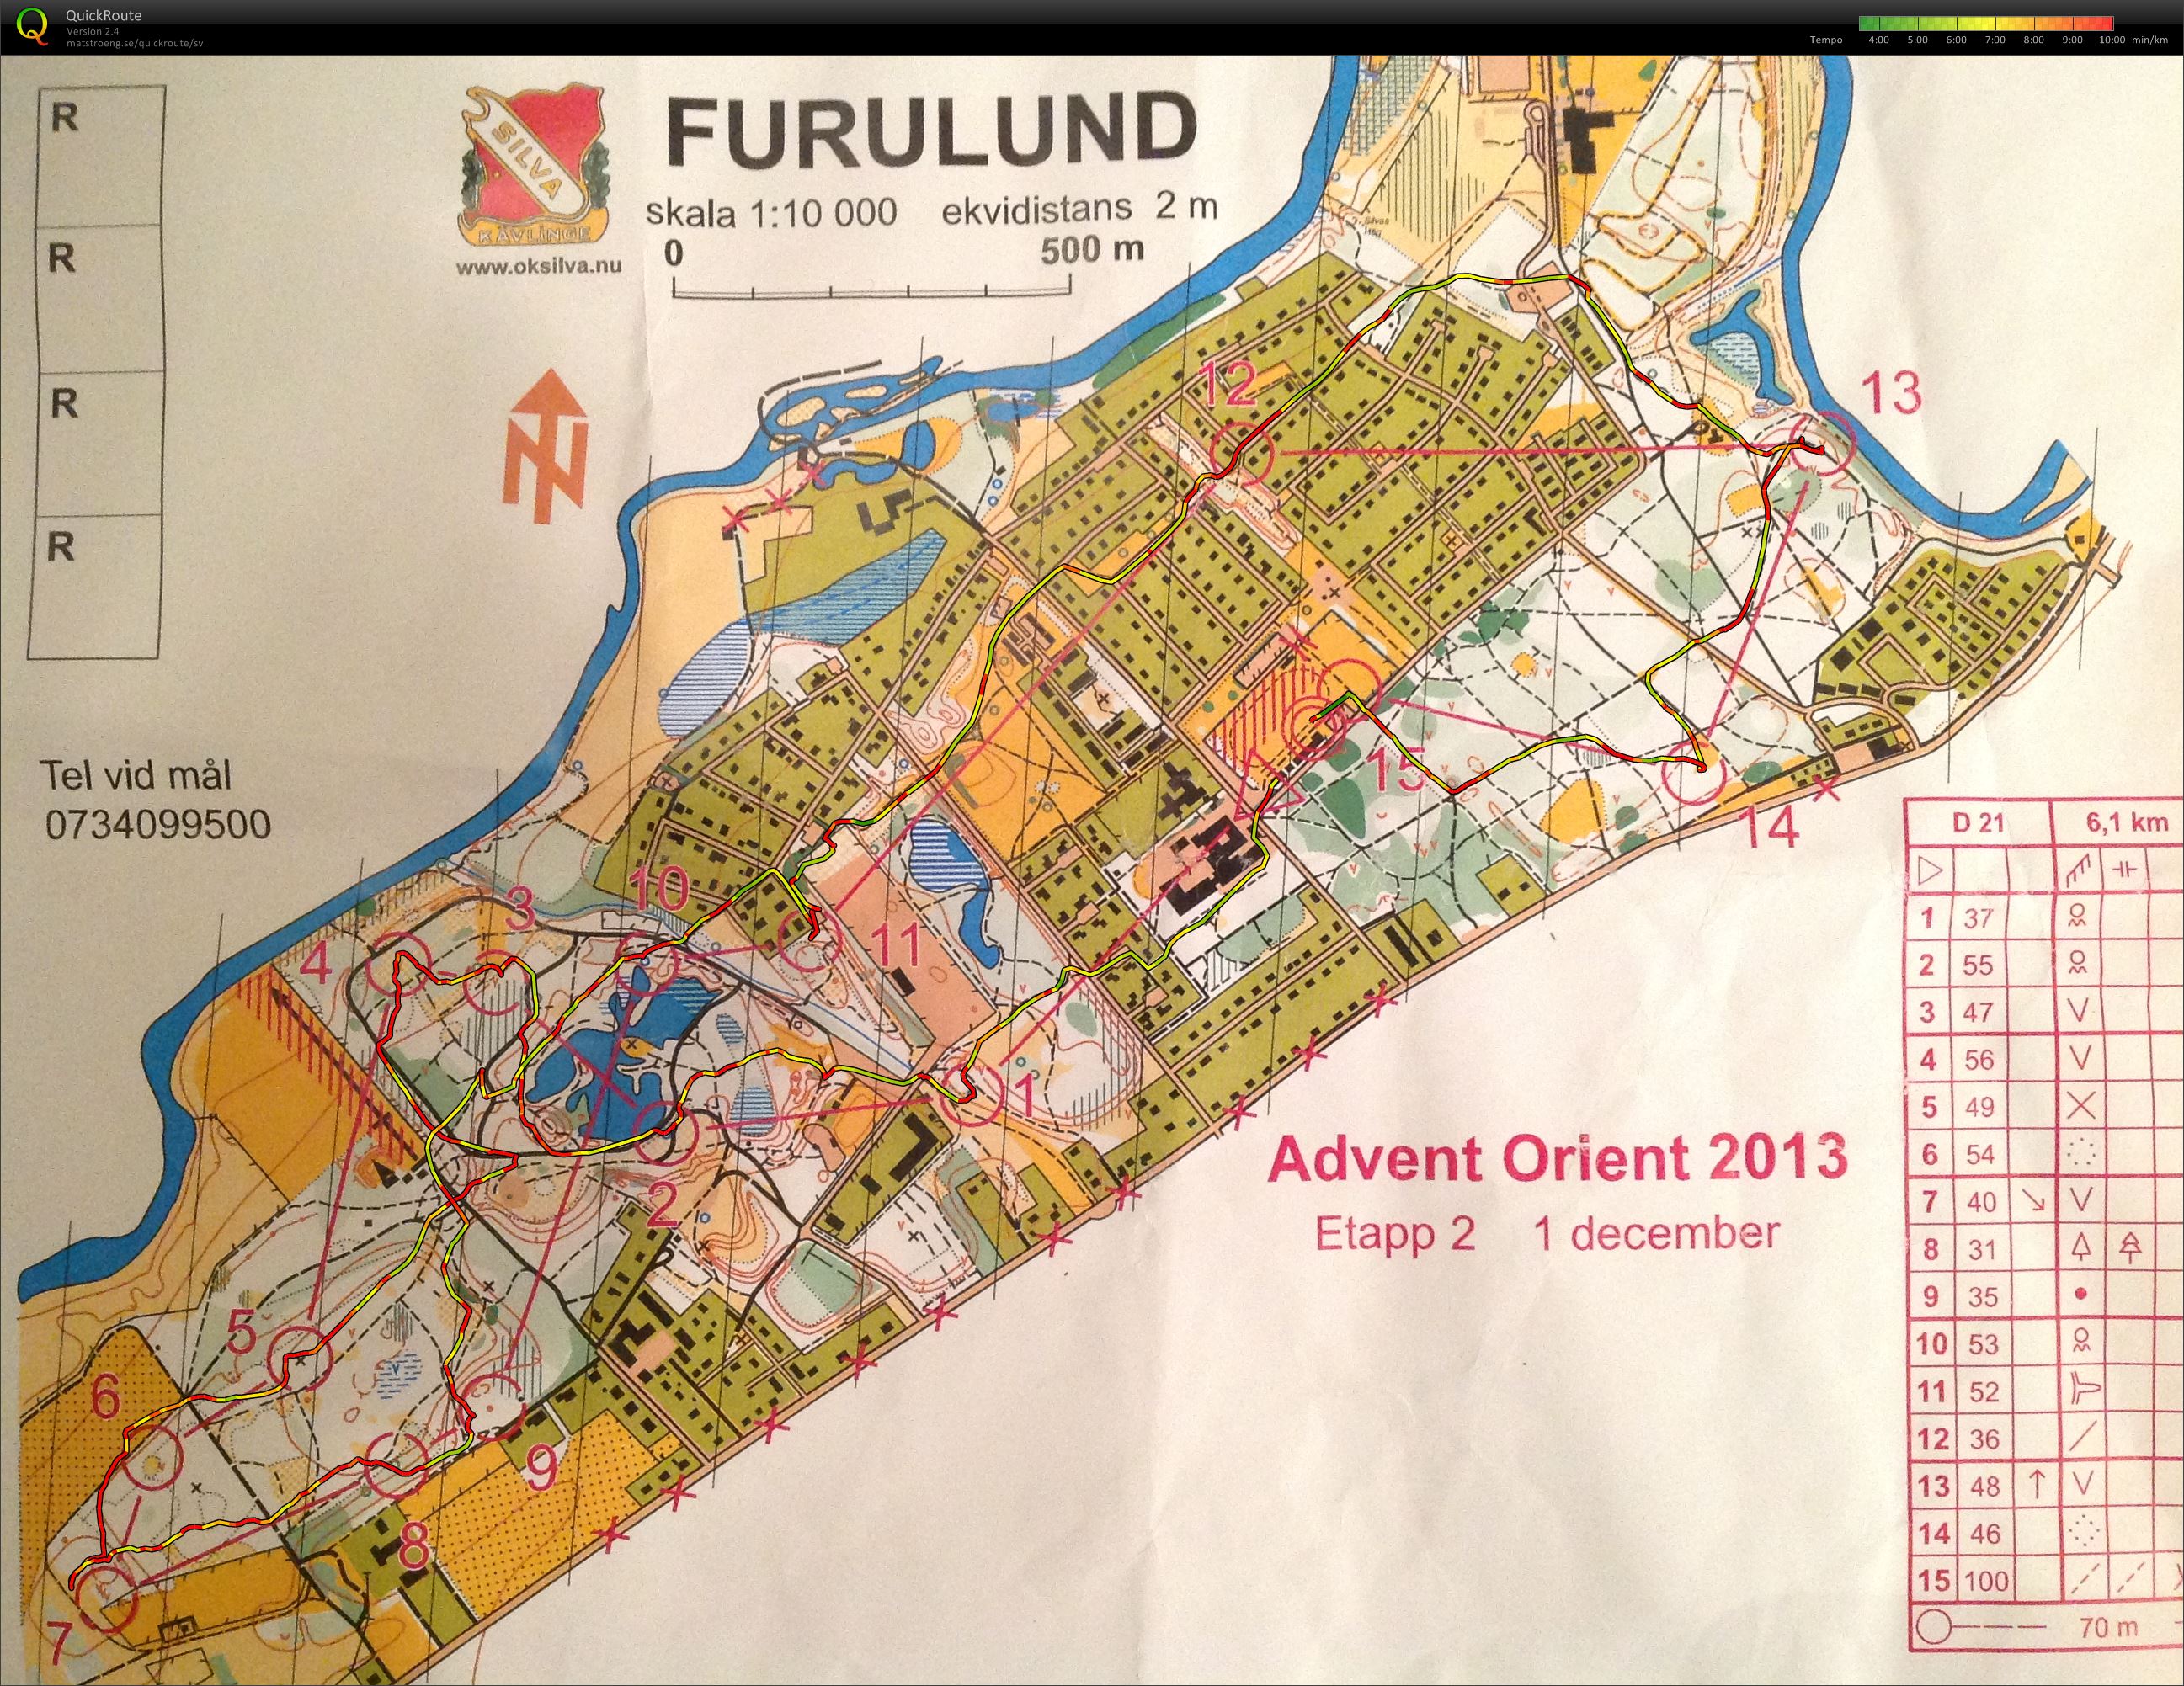 Advent Orient Furulund (2013-12-01)